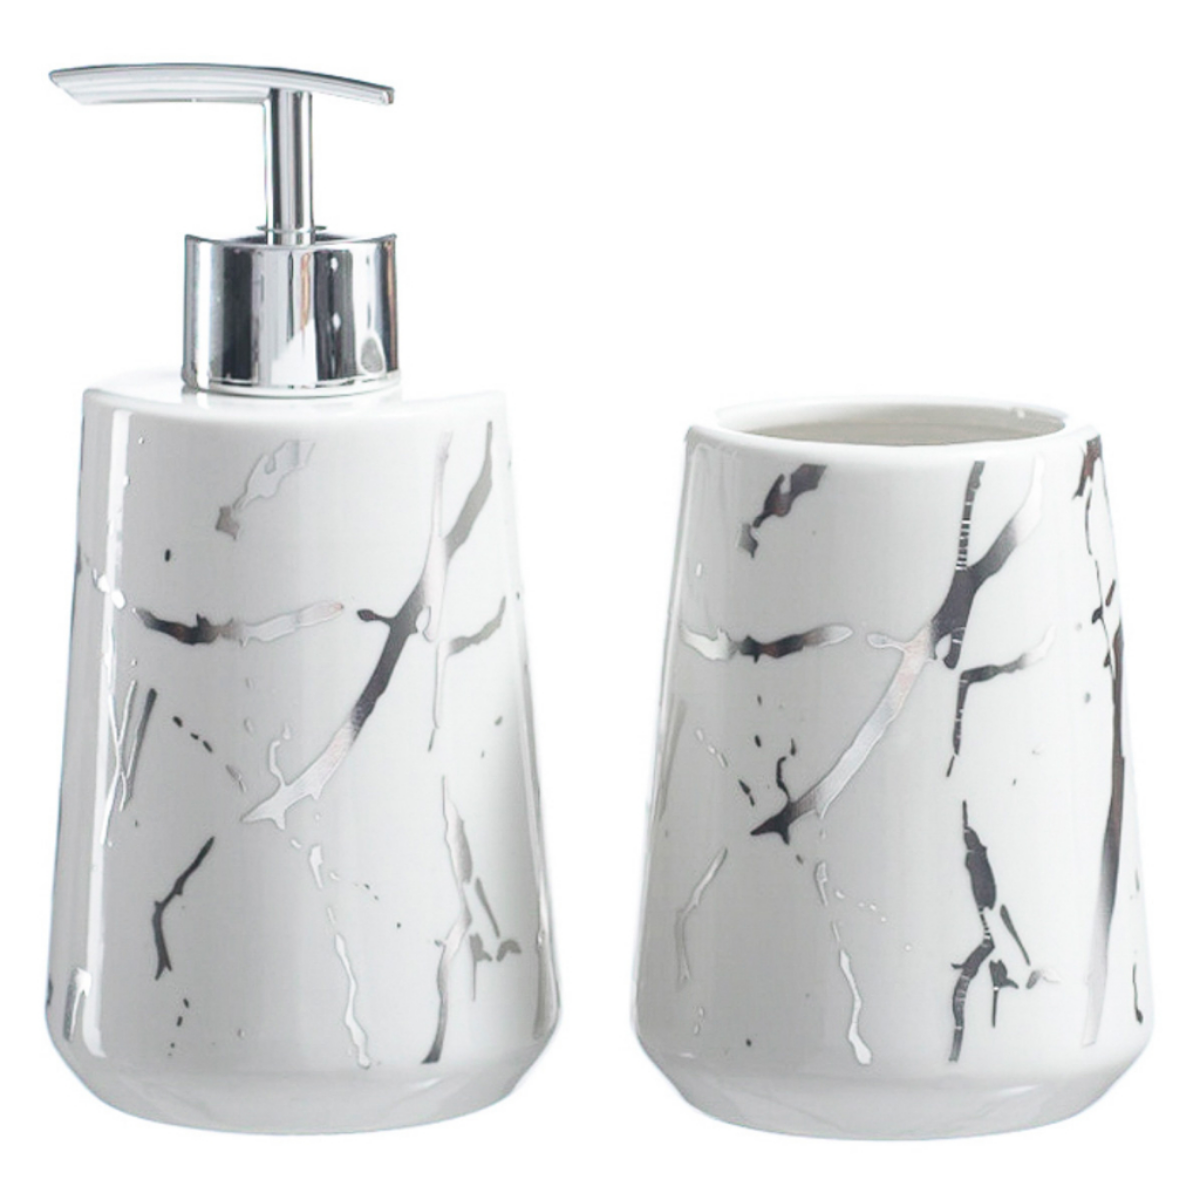 Kits Banheiro Lavabo de Porcelana Dispenser Sabonete Premium:prata